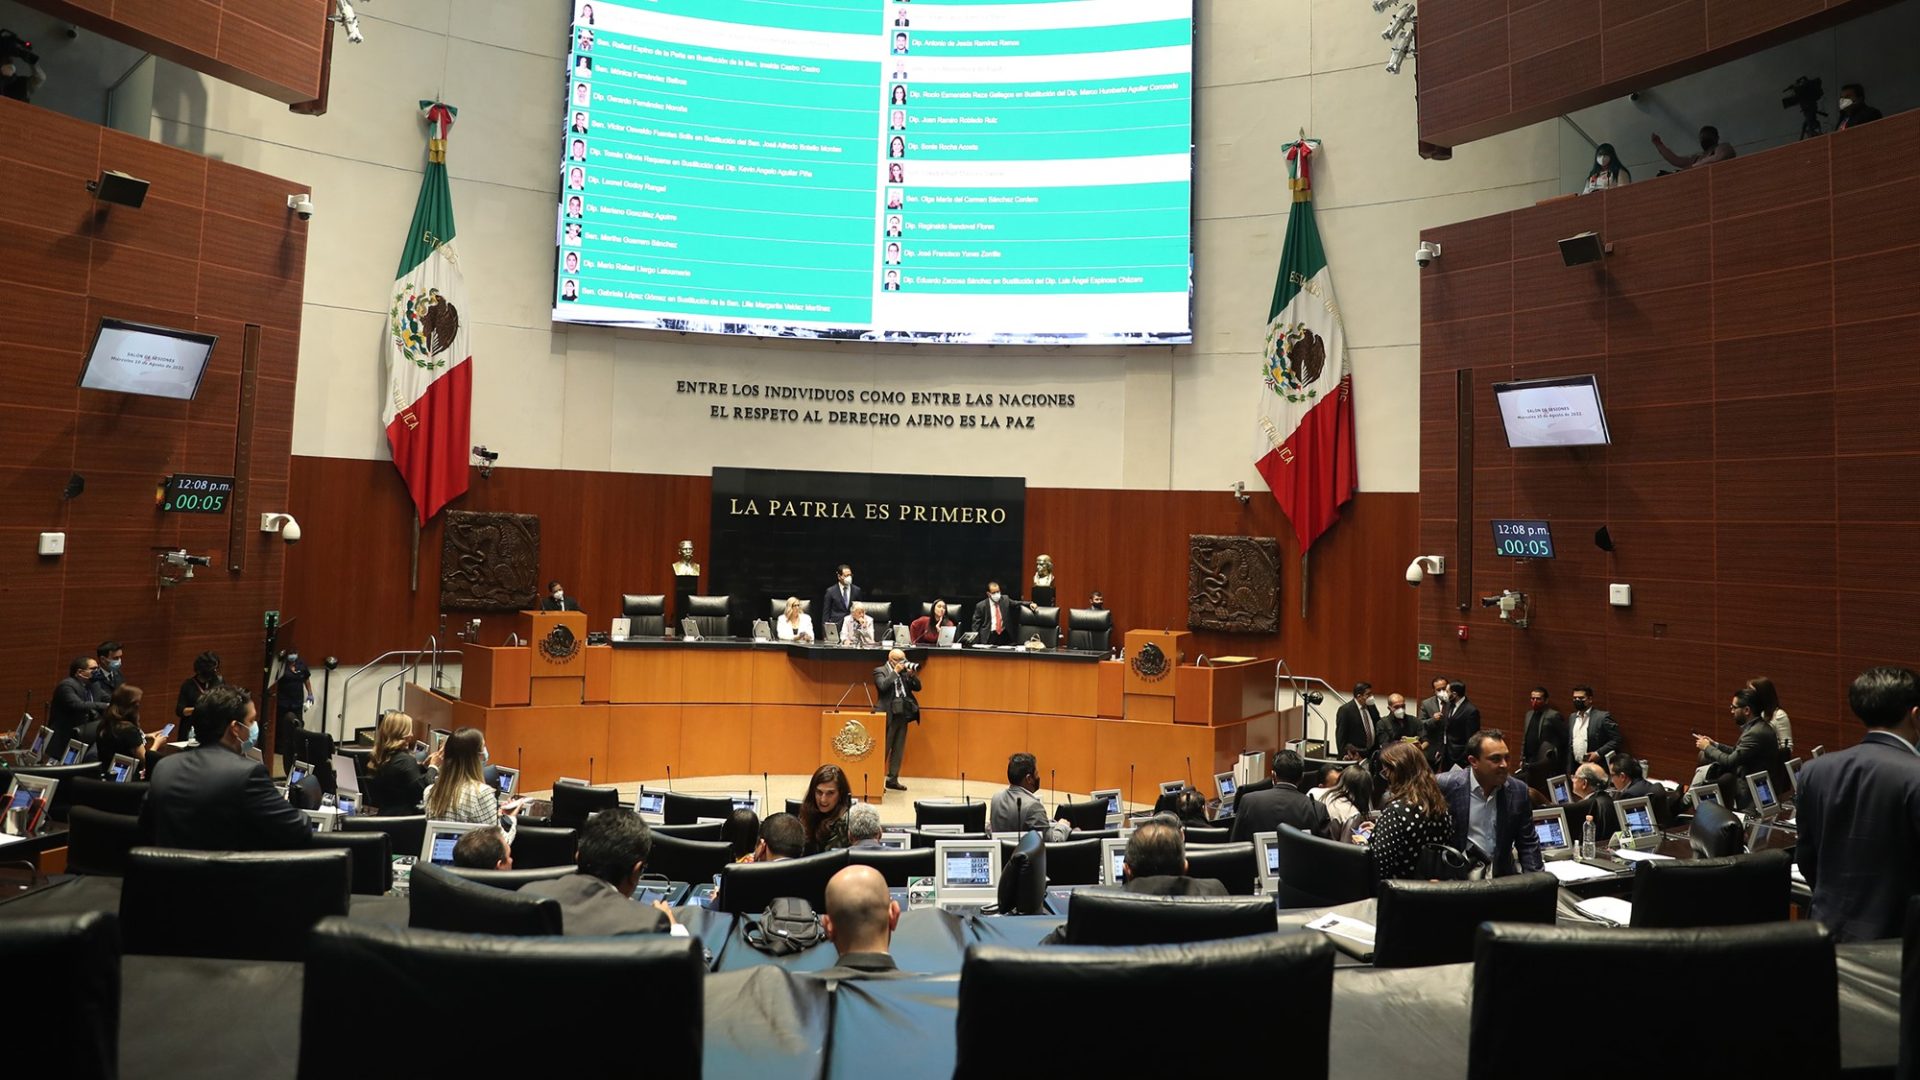 Suspender la suspensión: una propuesta para limitar la medida cautelar de los derechos humanos en México